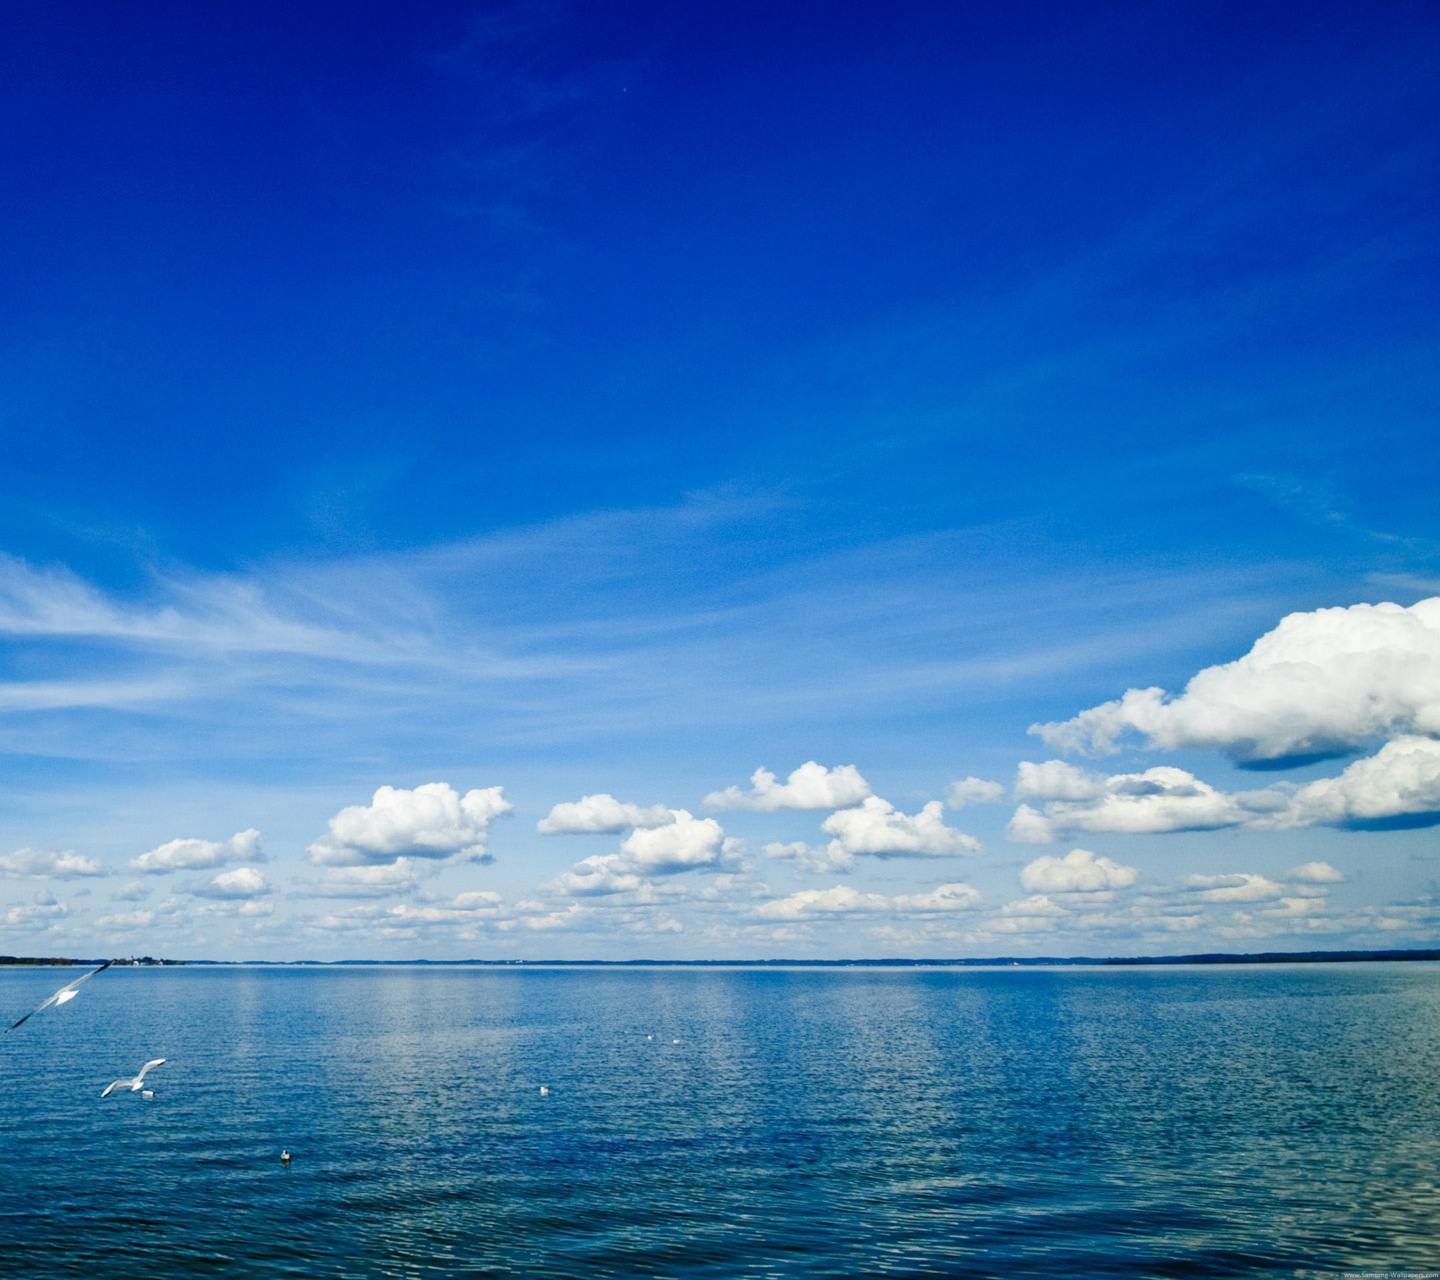 Pemandangan Langit Biru Laut Wallpapersc Android